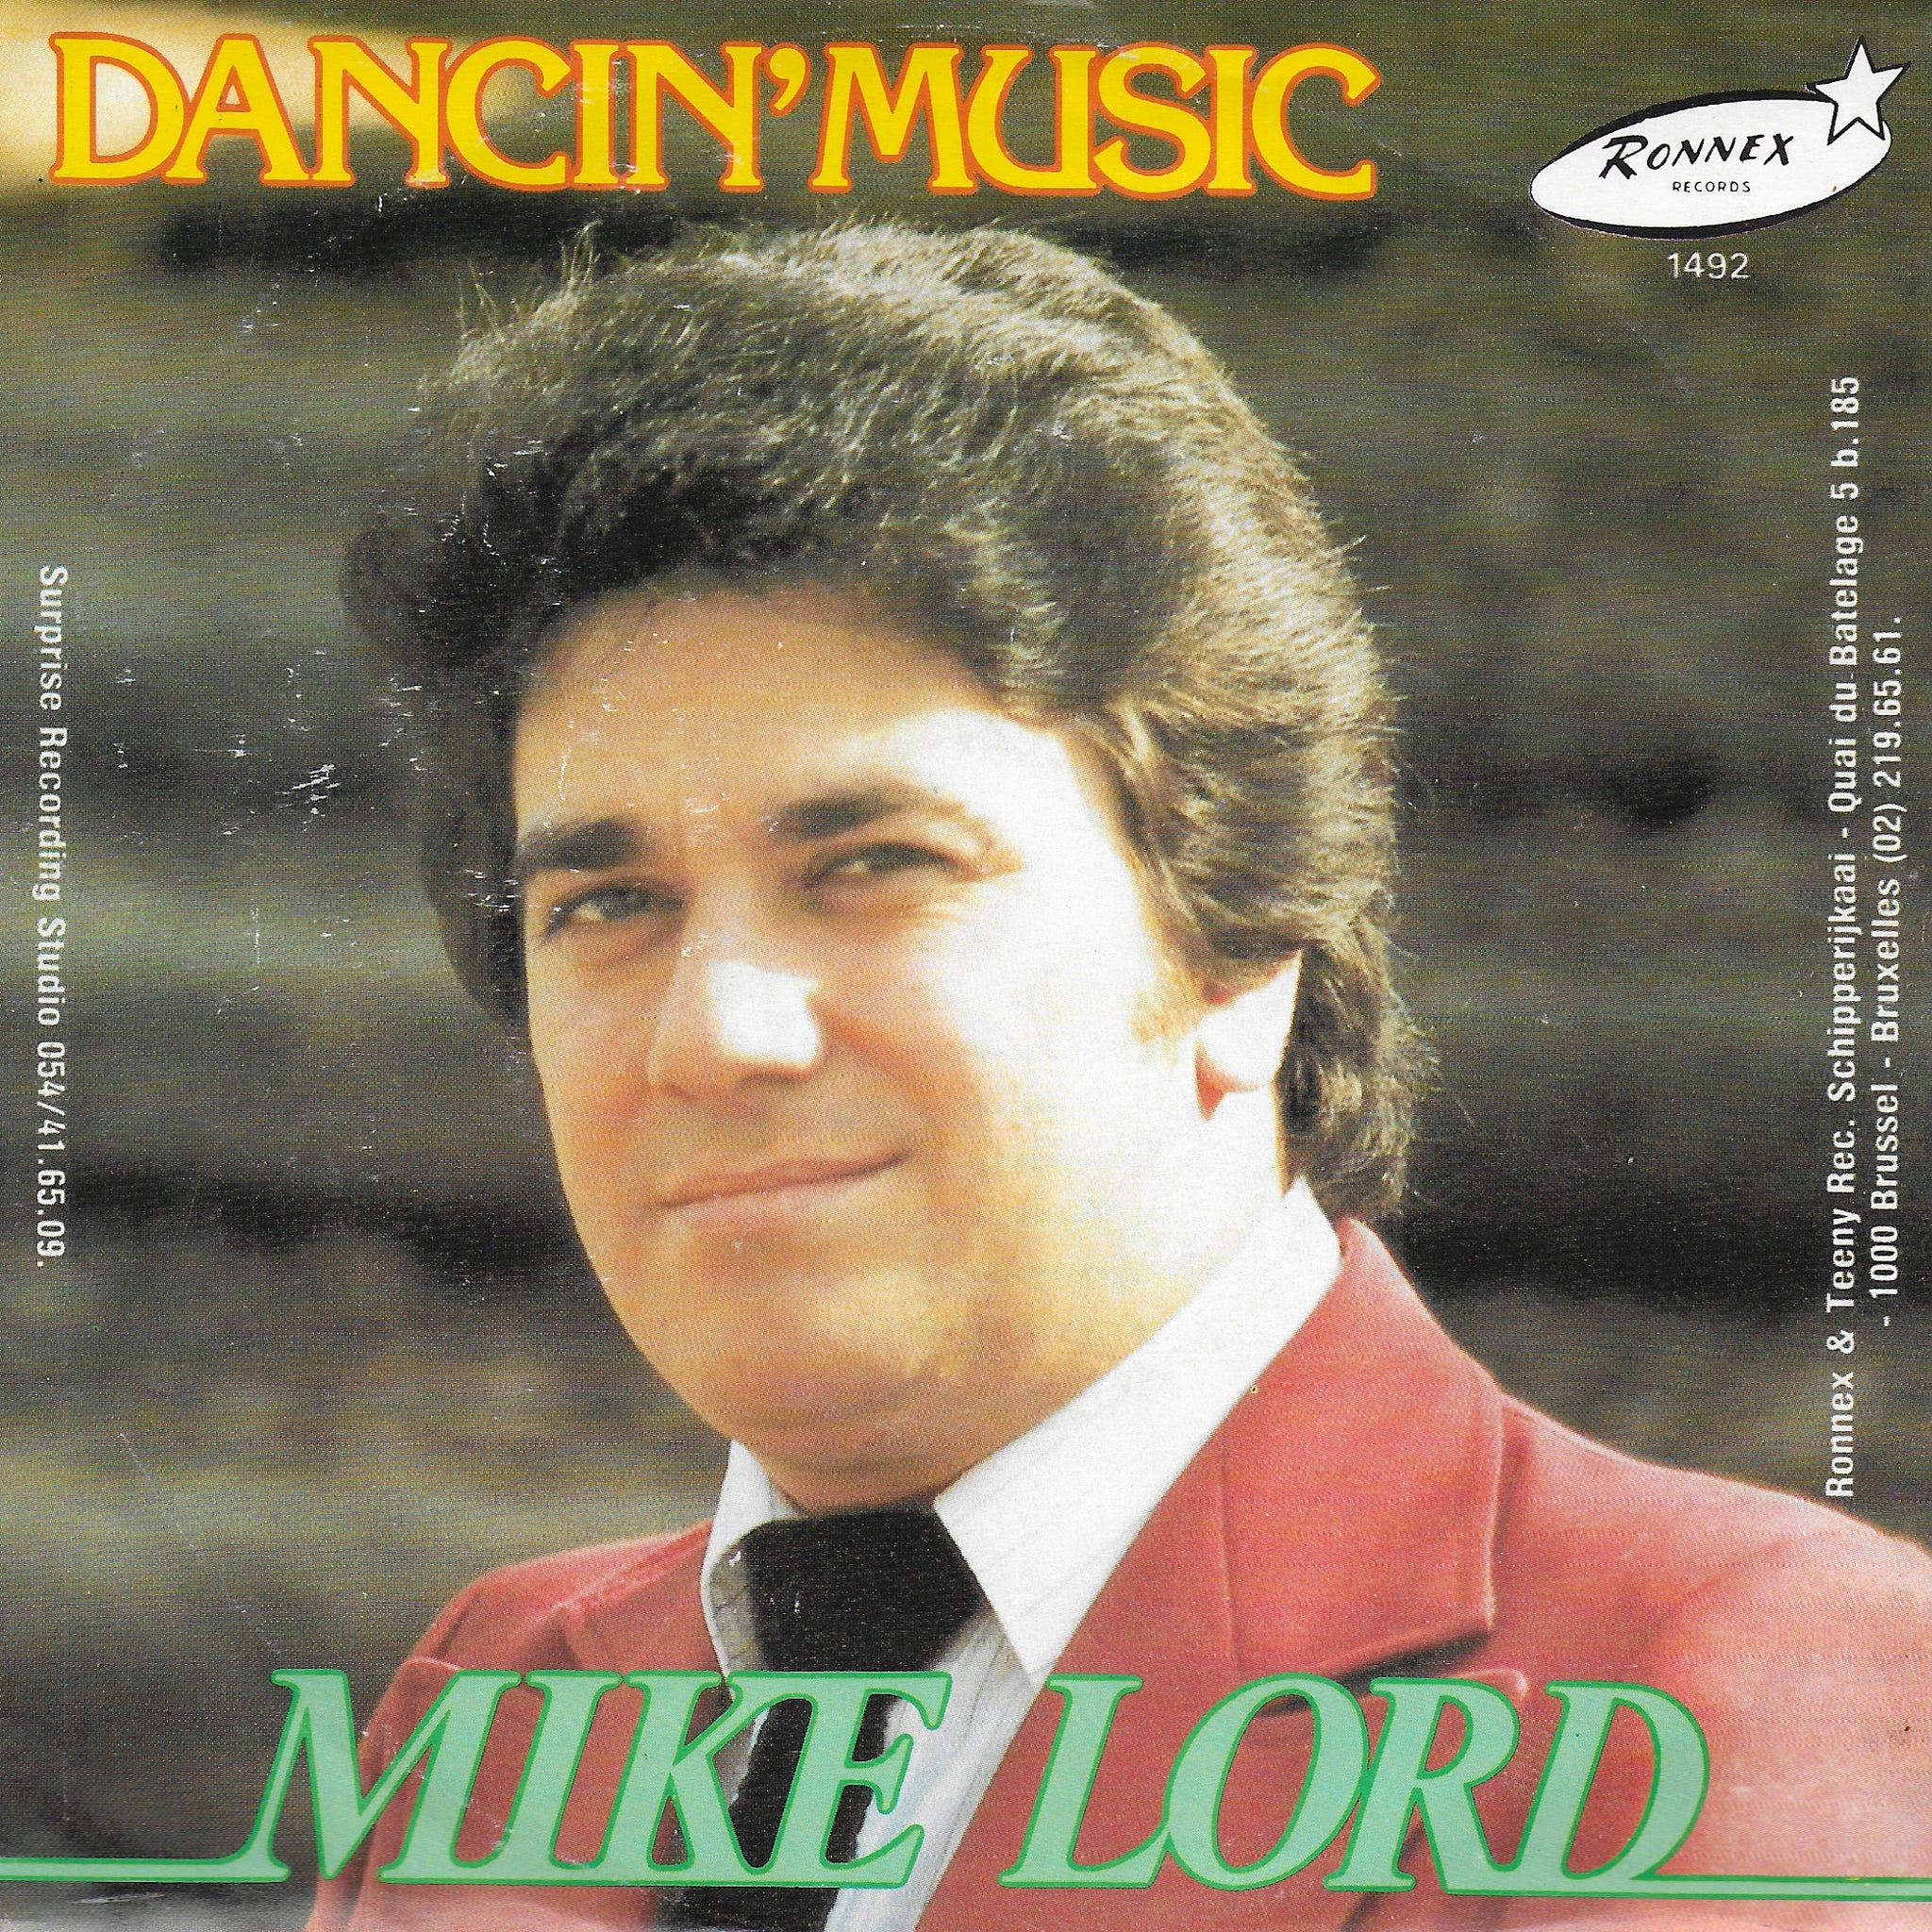 Mike Lord - Dancin' music